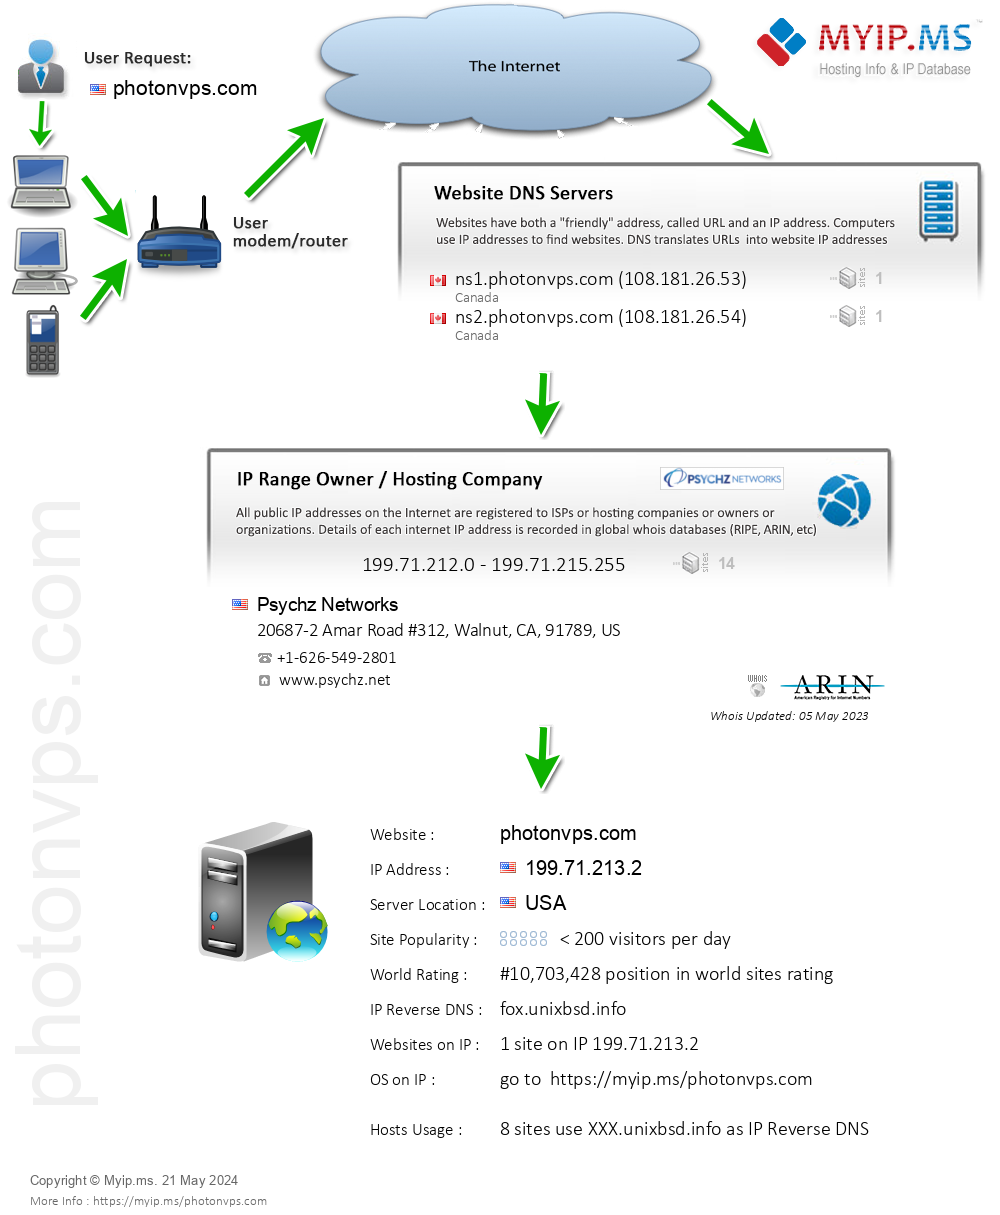 Photonvps.com - Website Hosting Visual IP Diagram